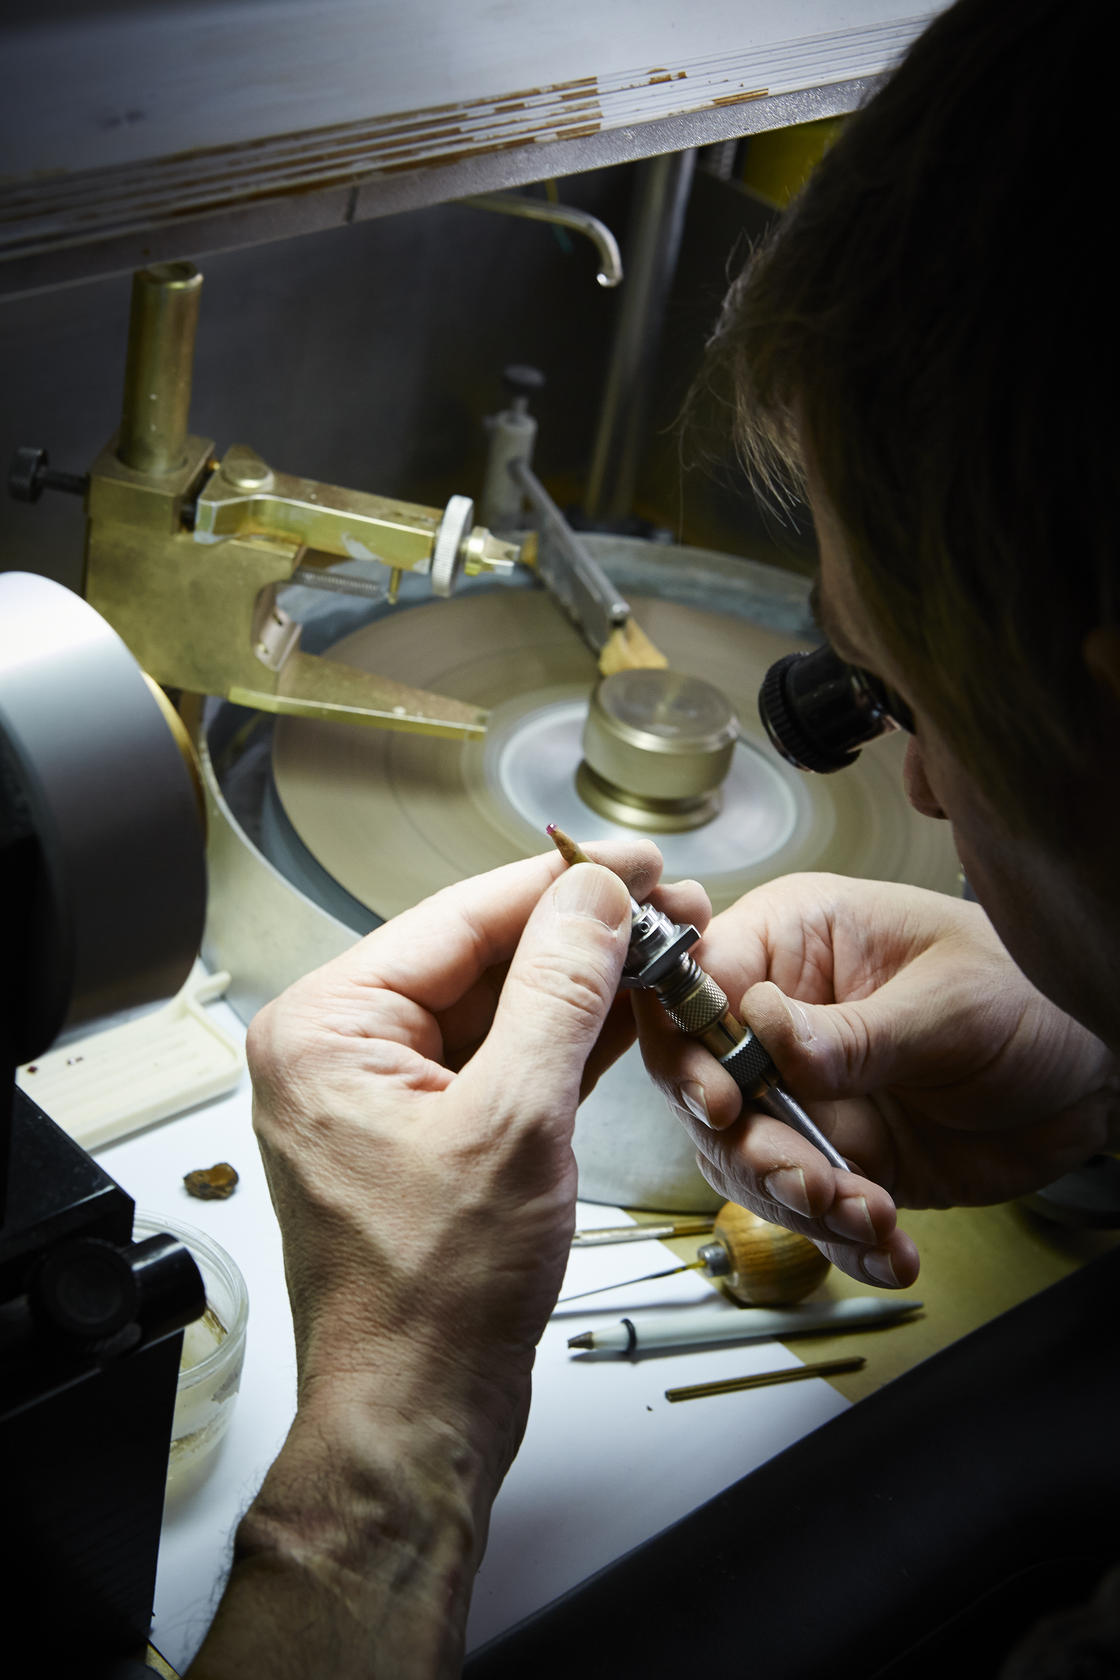 Van Cleef &amp; Arpels artisans reveal the skills of watchmaking.